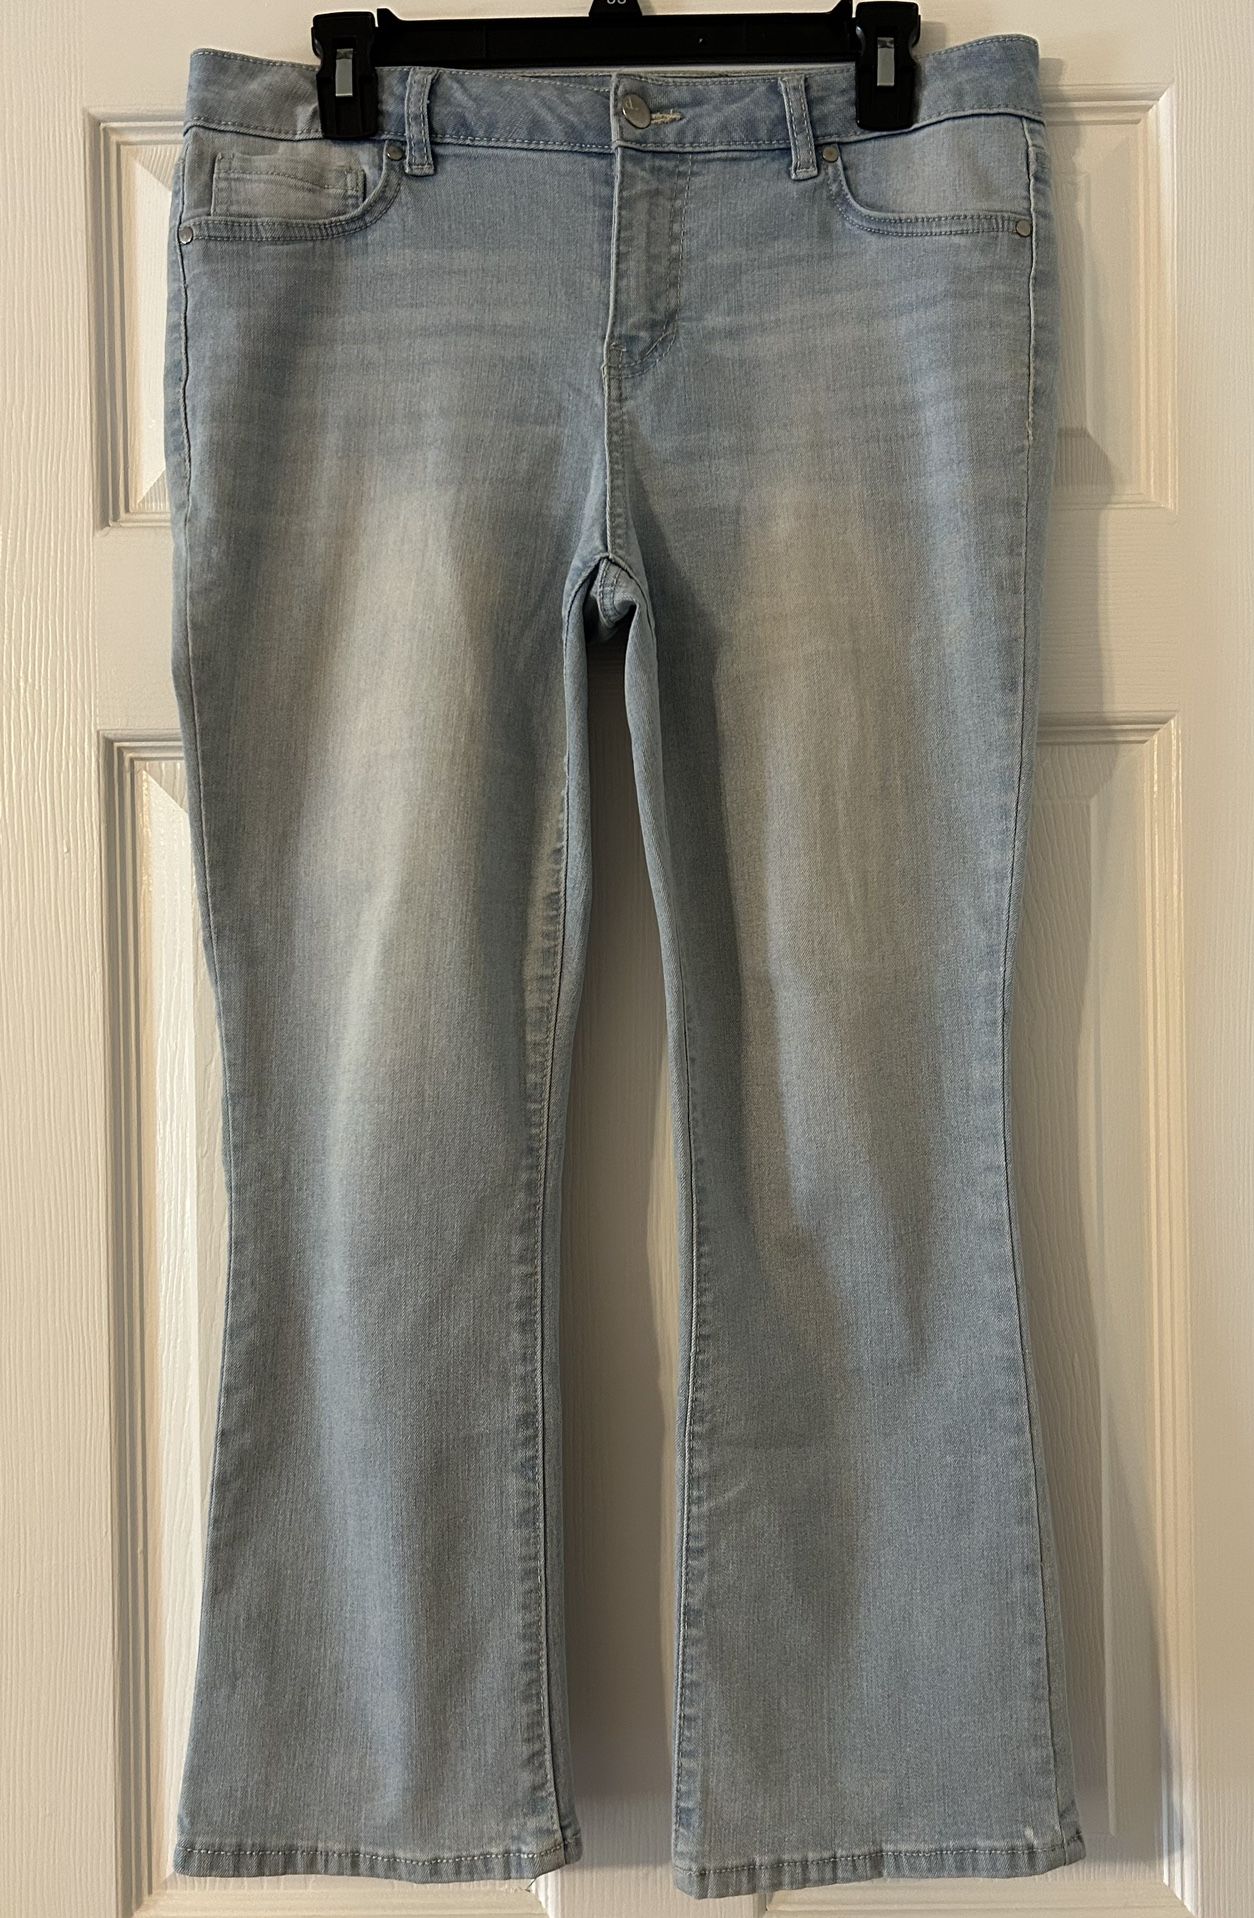 d. Jeans Capris Light Wash Stretch Denim Jeans Blue Casual Size 10